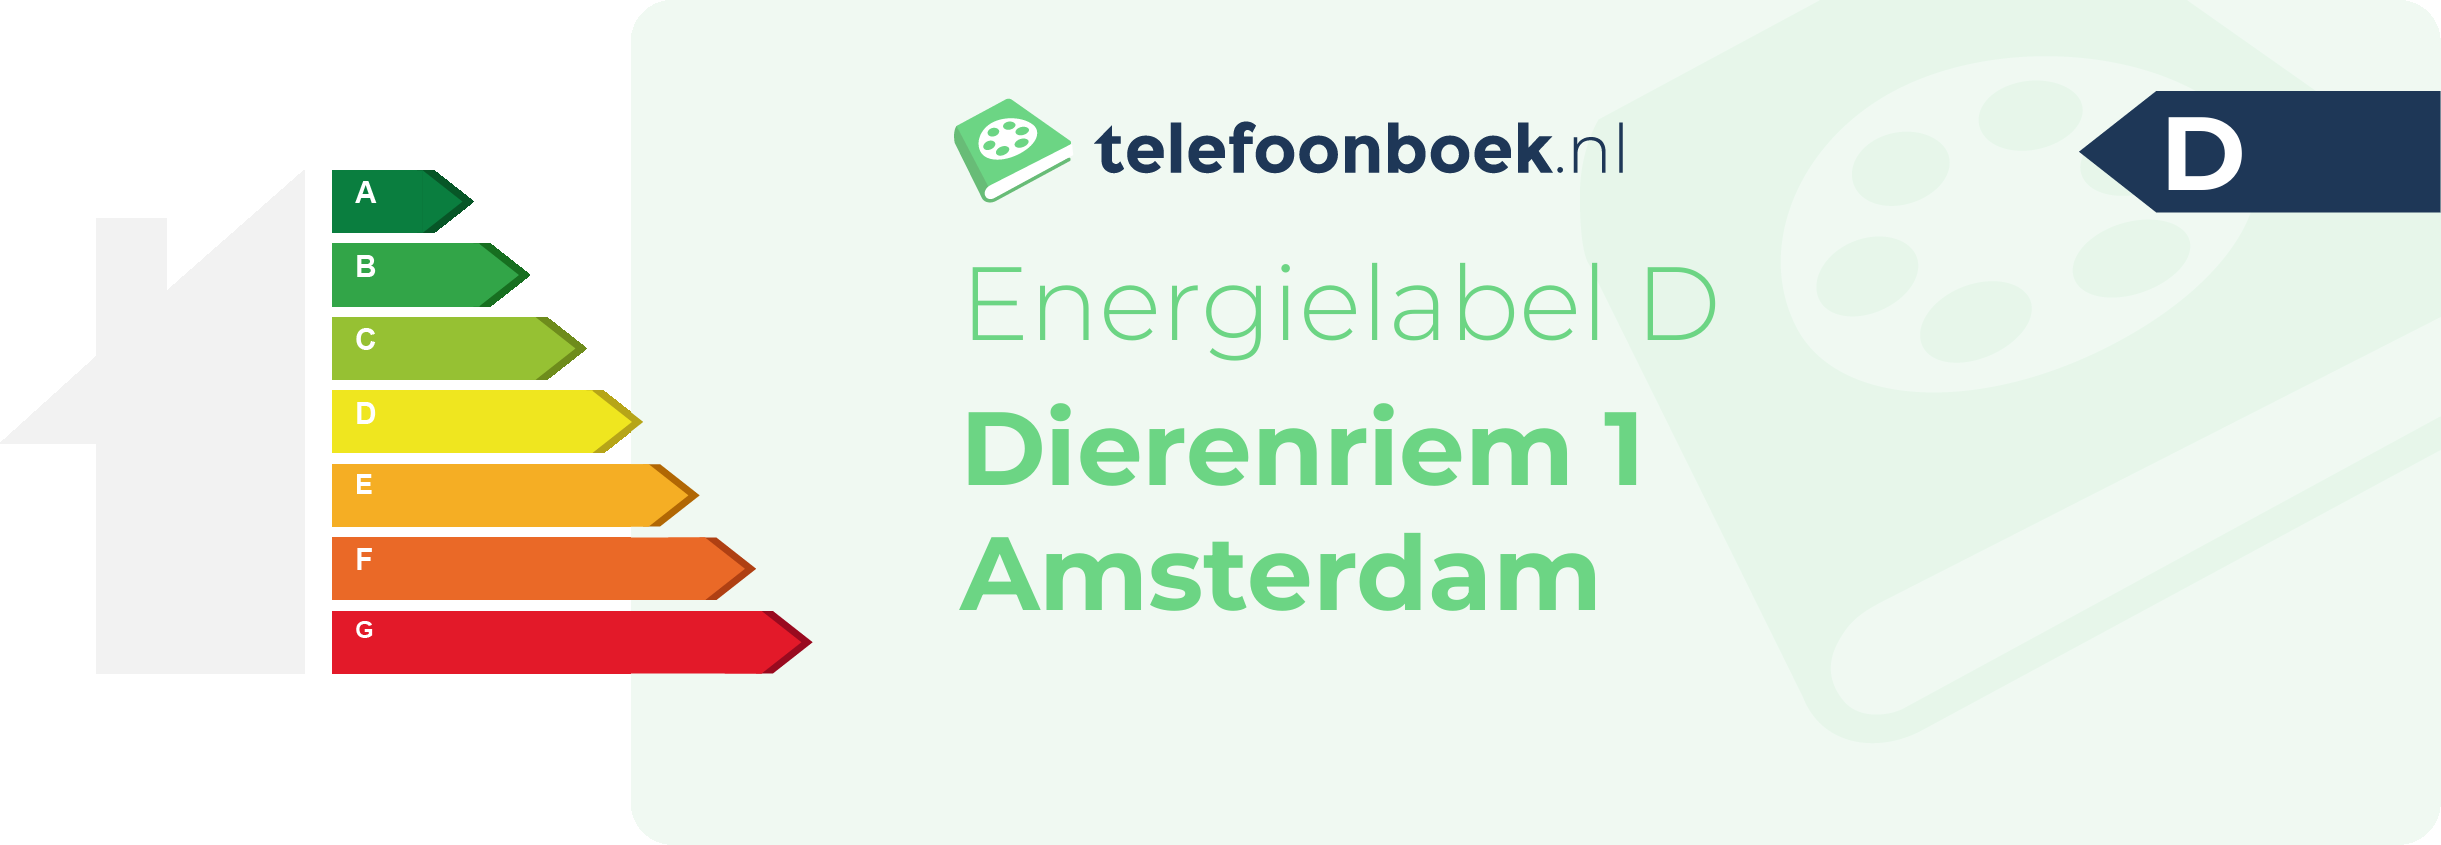 Energielabel Dierenriem 1 Amsterdam